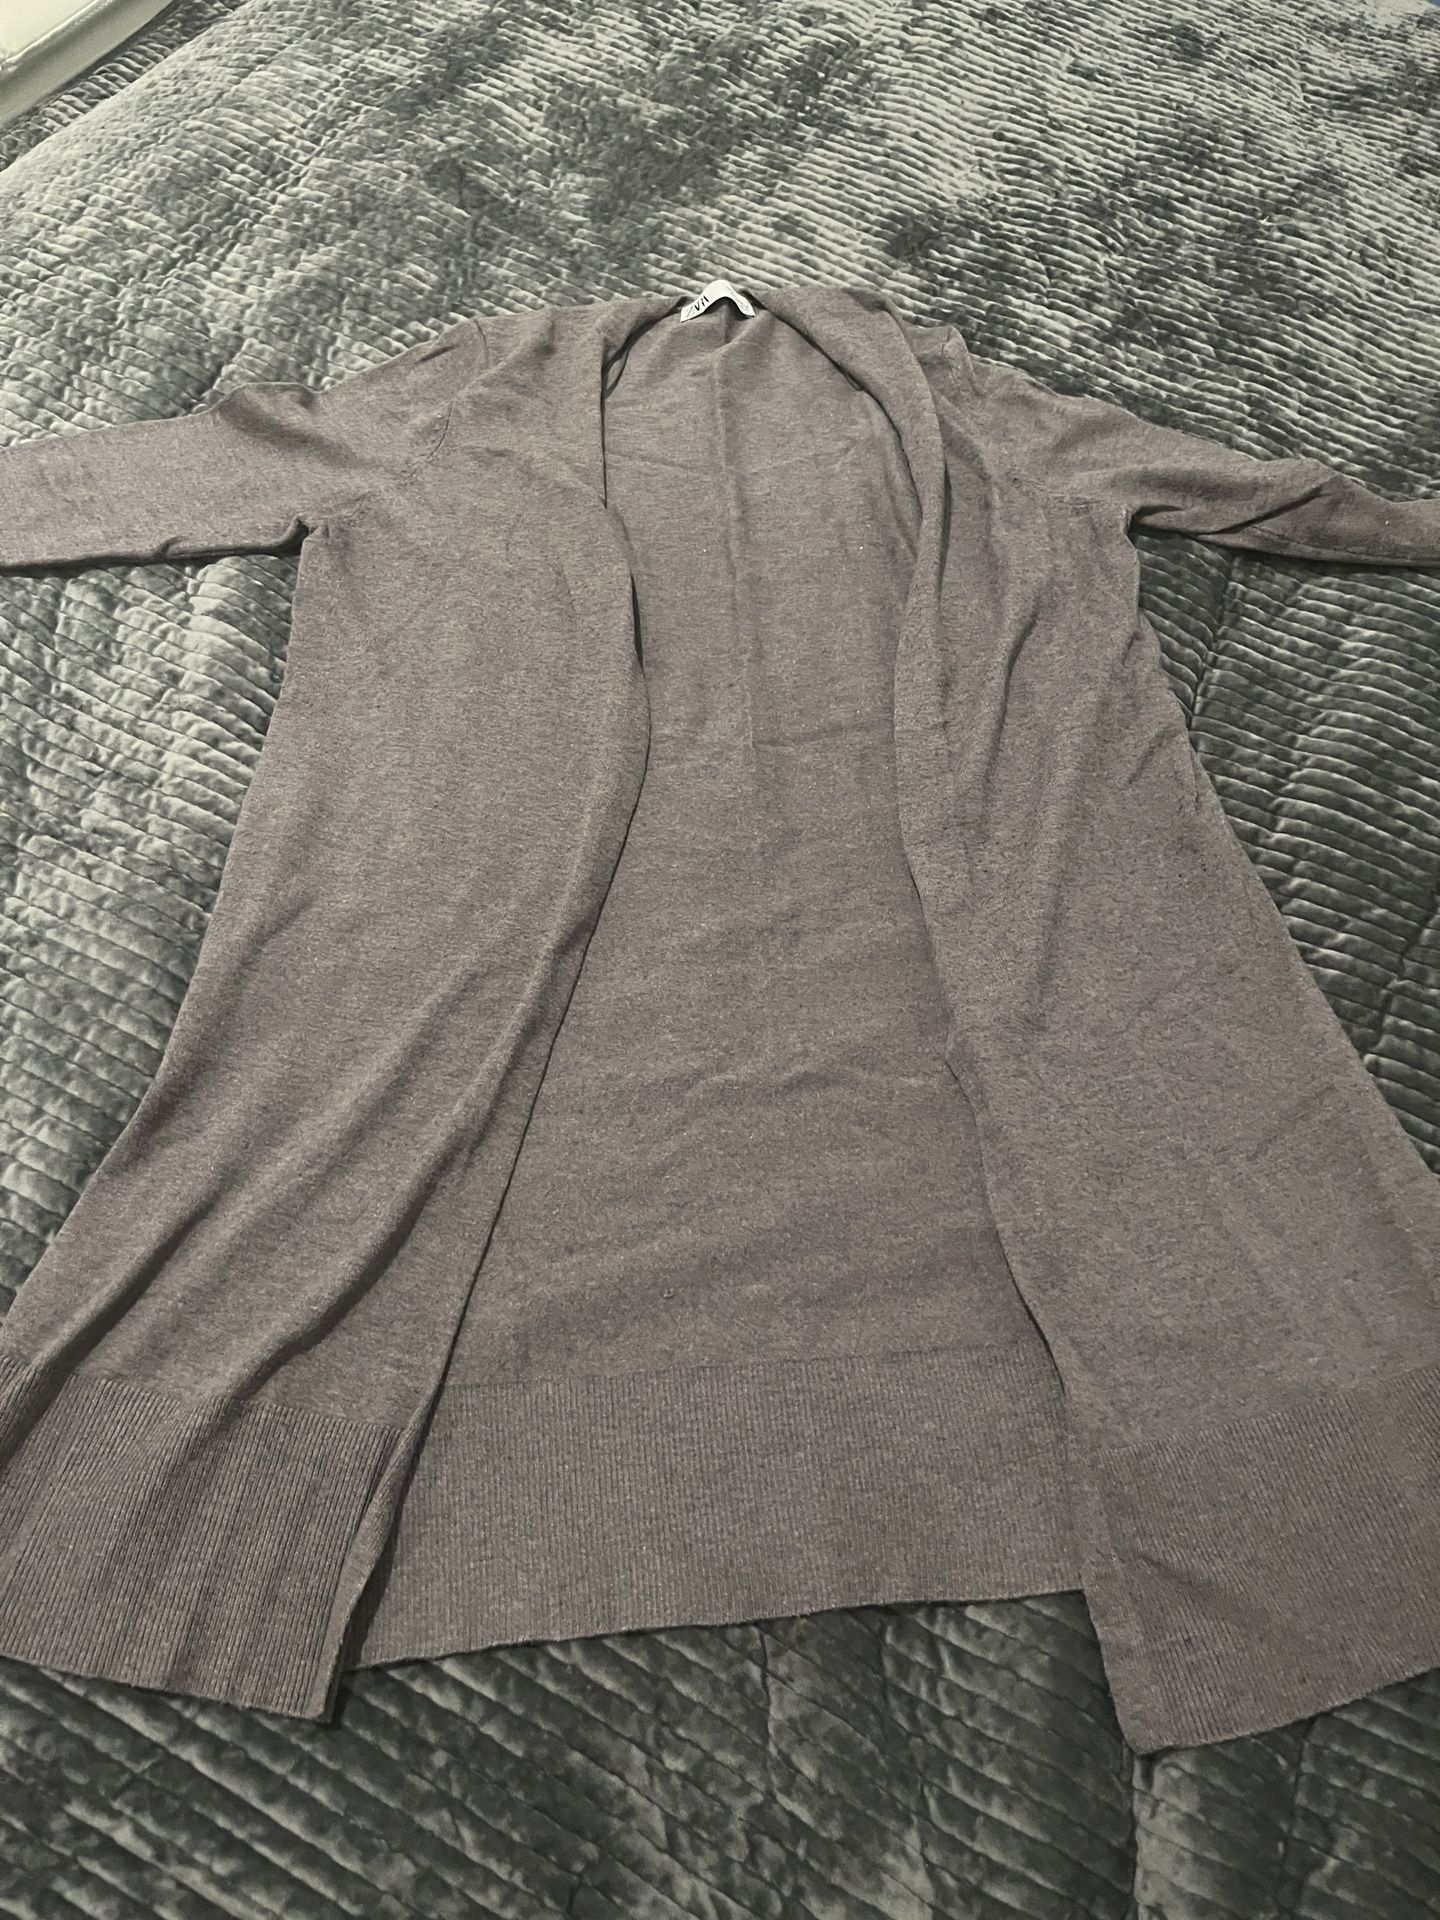 ZARA Grey Cardigan Size M